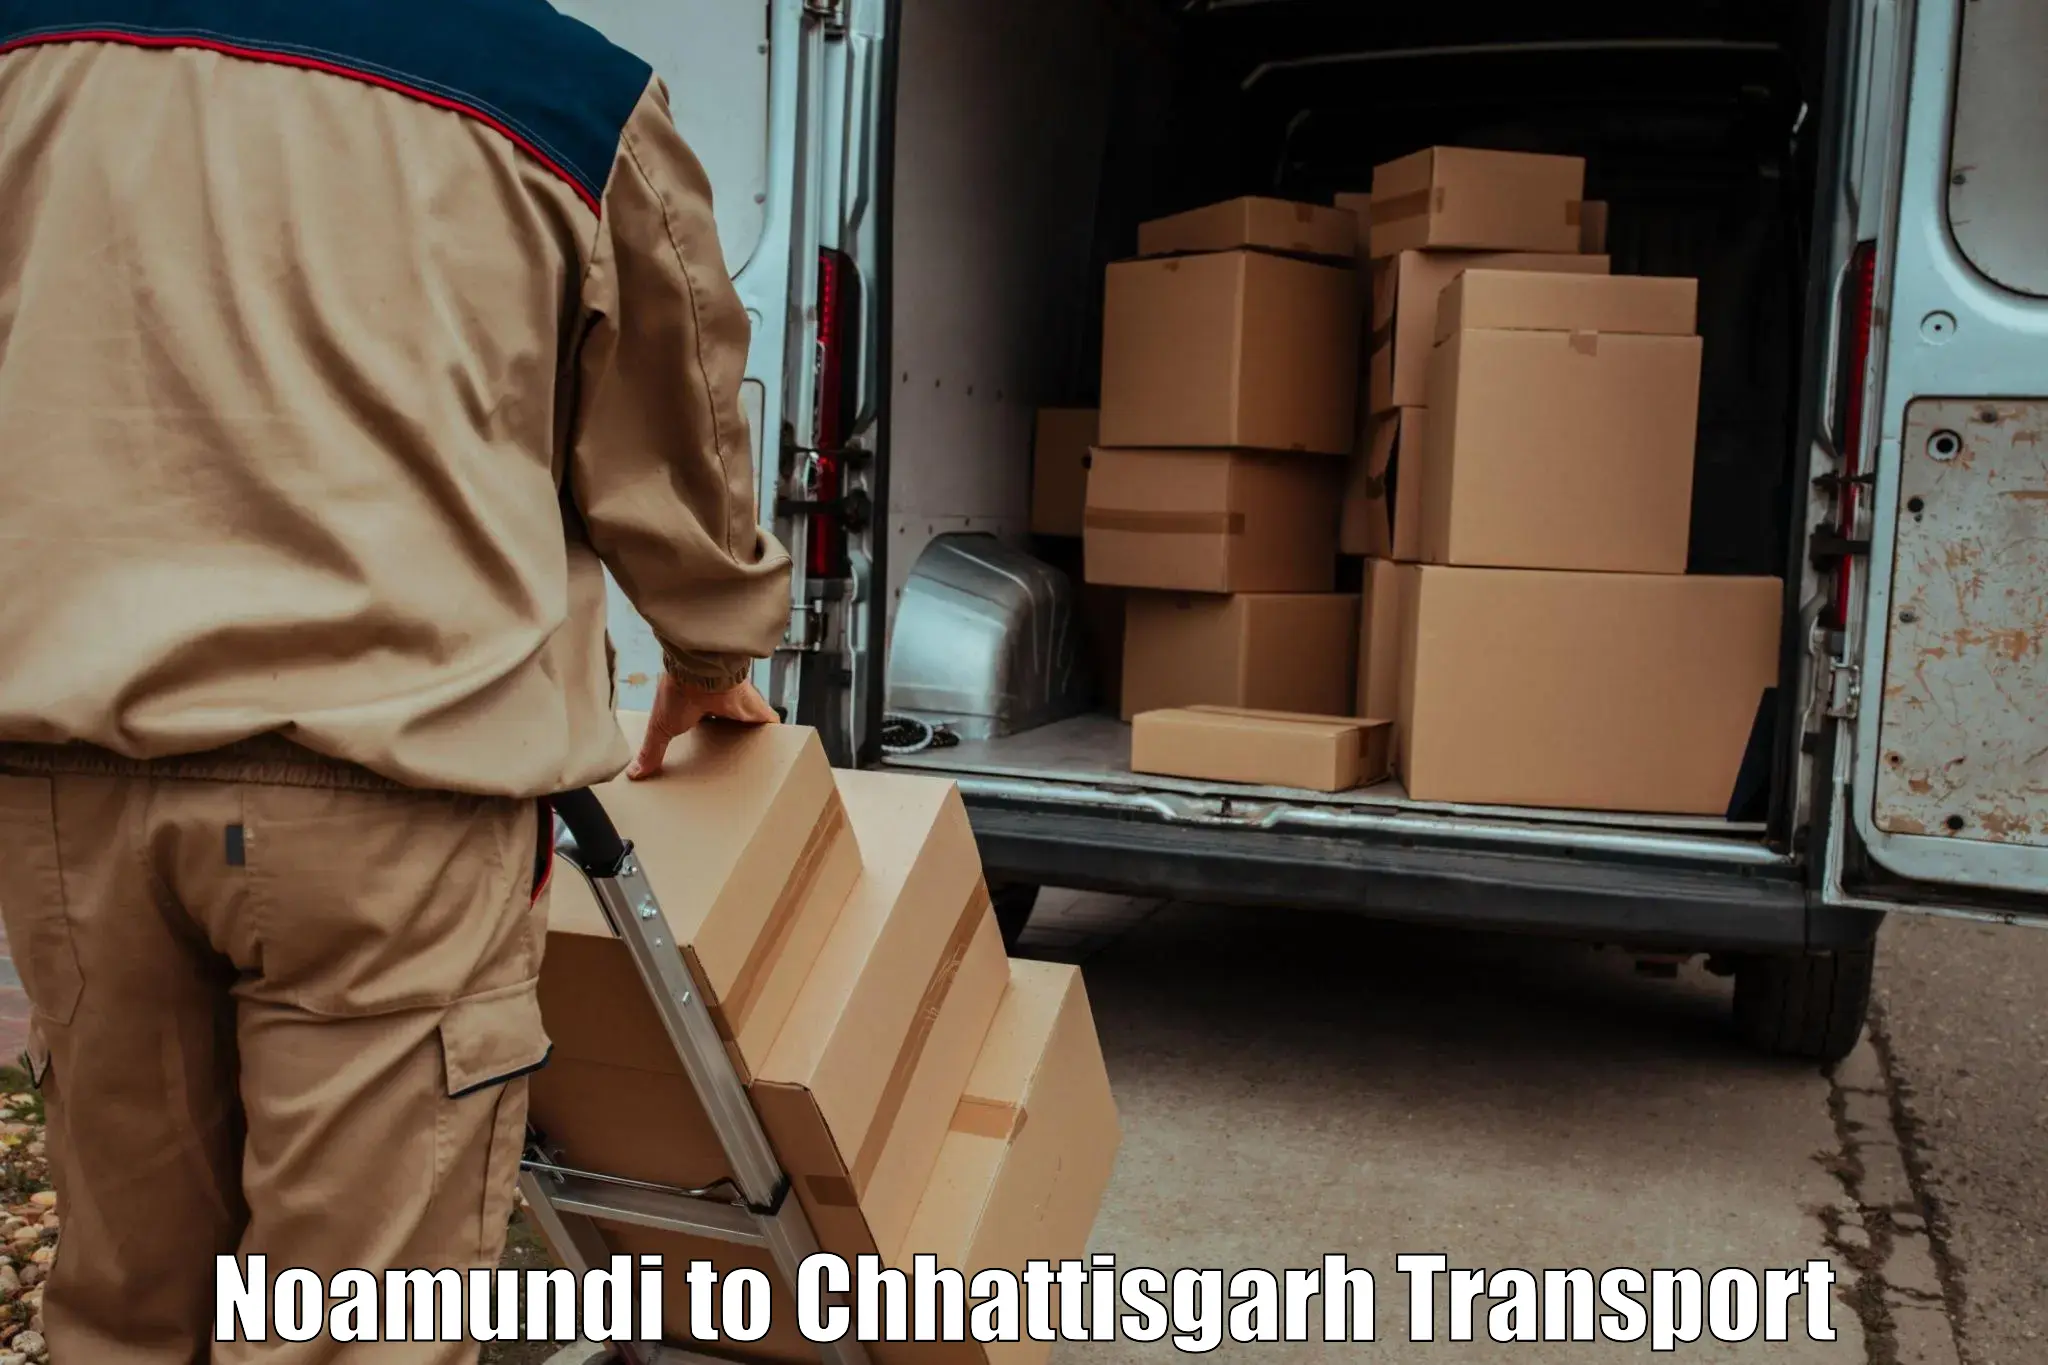 Transport in sharing Noamundi to Raigarh Chhattisgarh